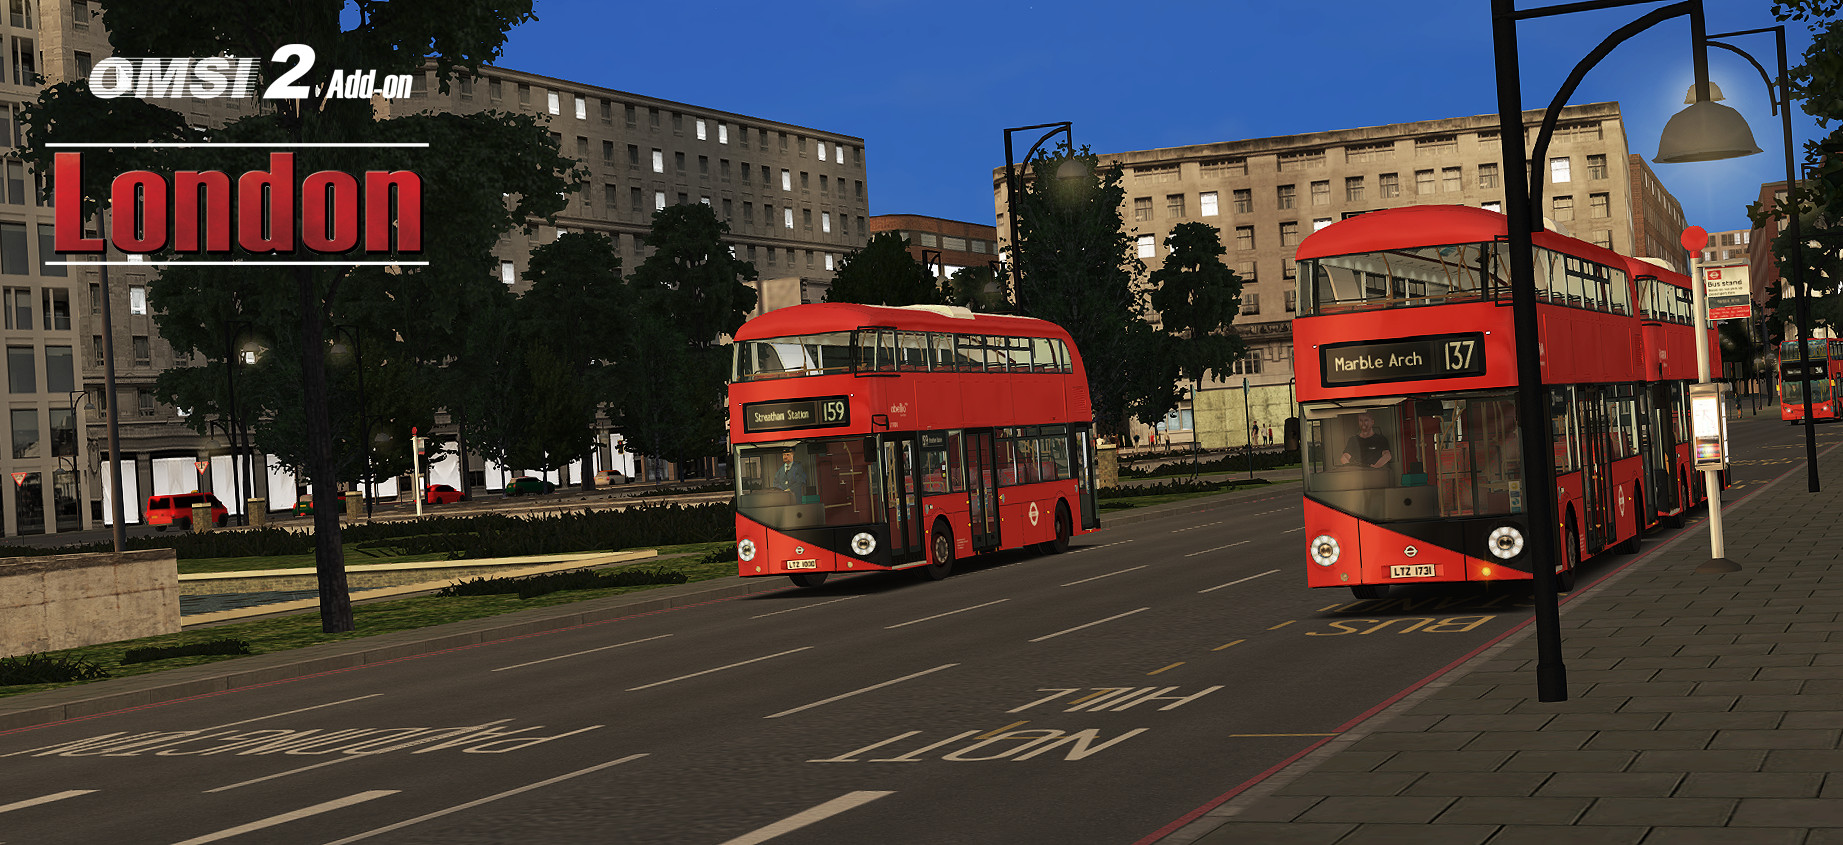 OMSI 2 Add-On London screenshot